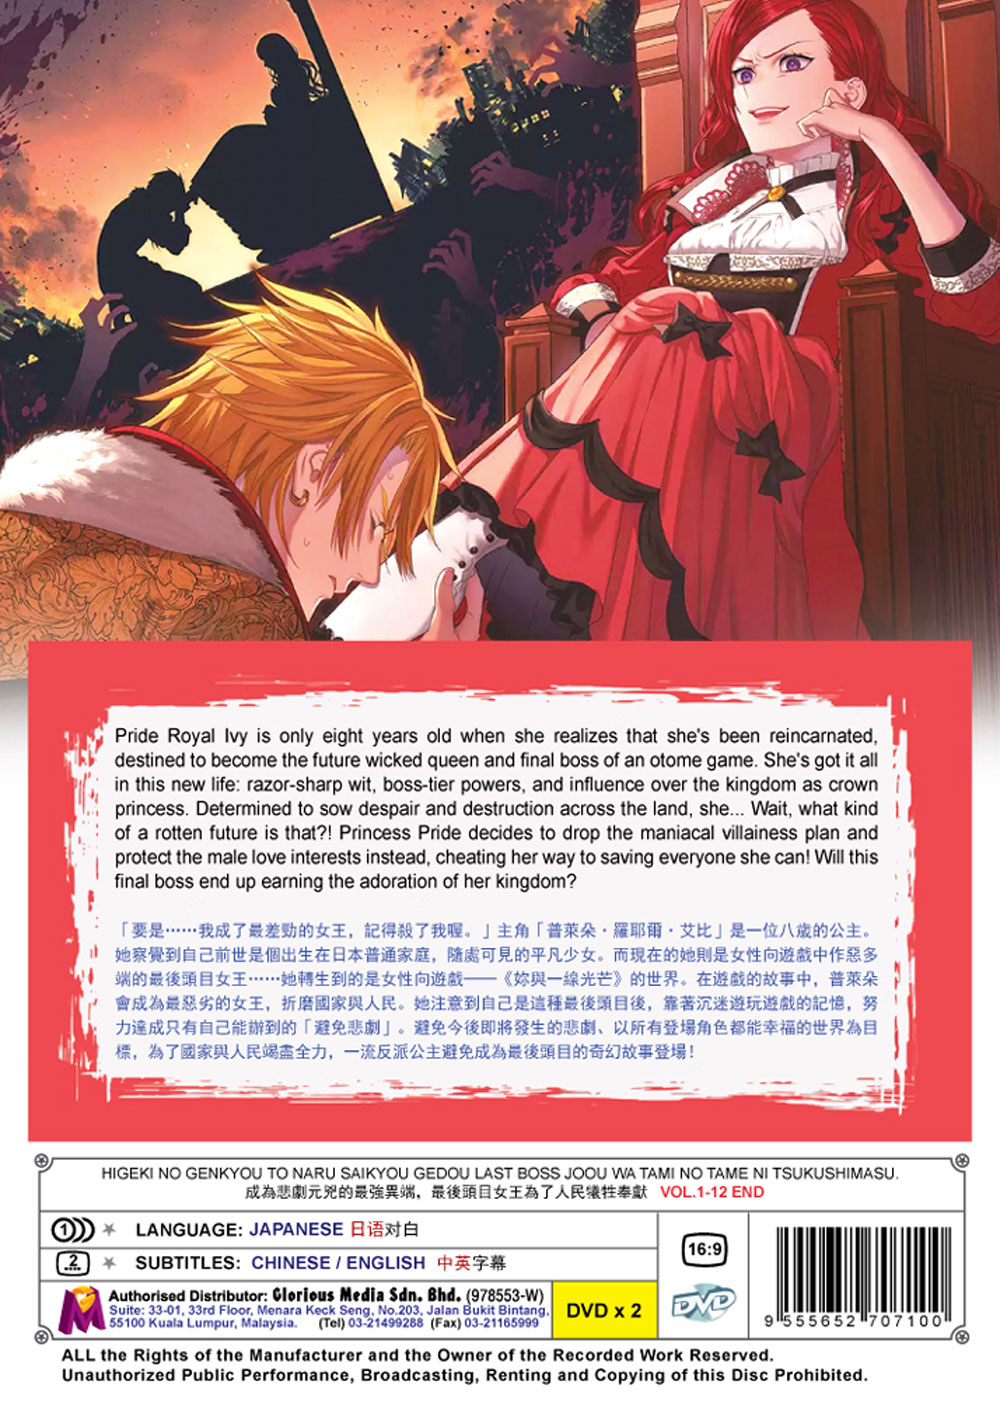 AmiAmi [Character & Hobby Shop]  BD Higeki no Genkyou to naru Saikyou  Gedou Last Boss Joou wa Tami no tame ni Tsukushimasu. BD-BOX First Vol.  (Blu-ray Disc)(Released)